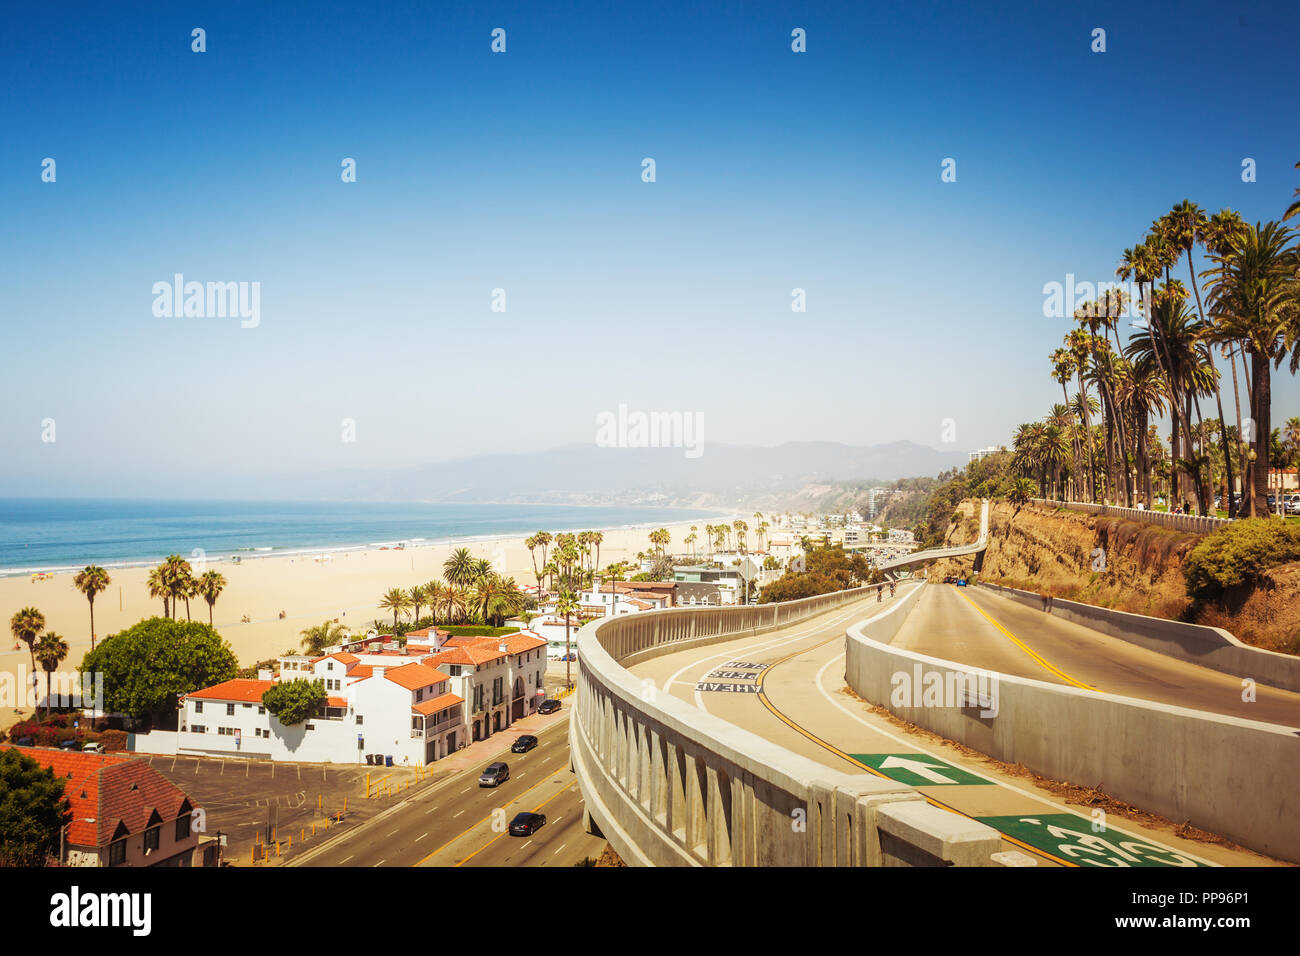 Kalifornien Neigung in Santa Monica mit fantastischem Blick auf den Pazifik Küste Stockfoto